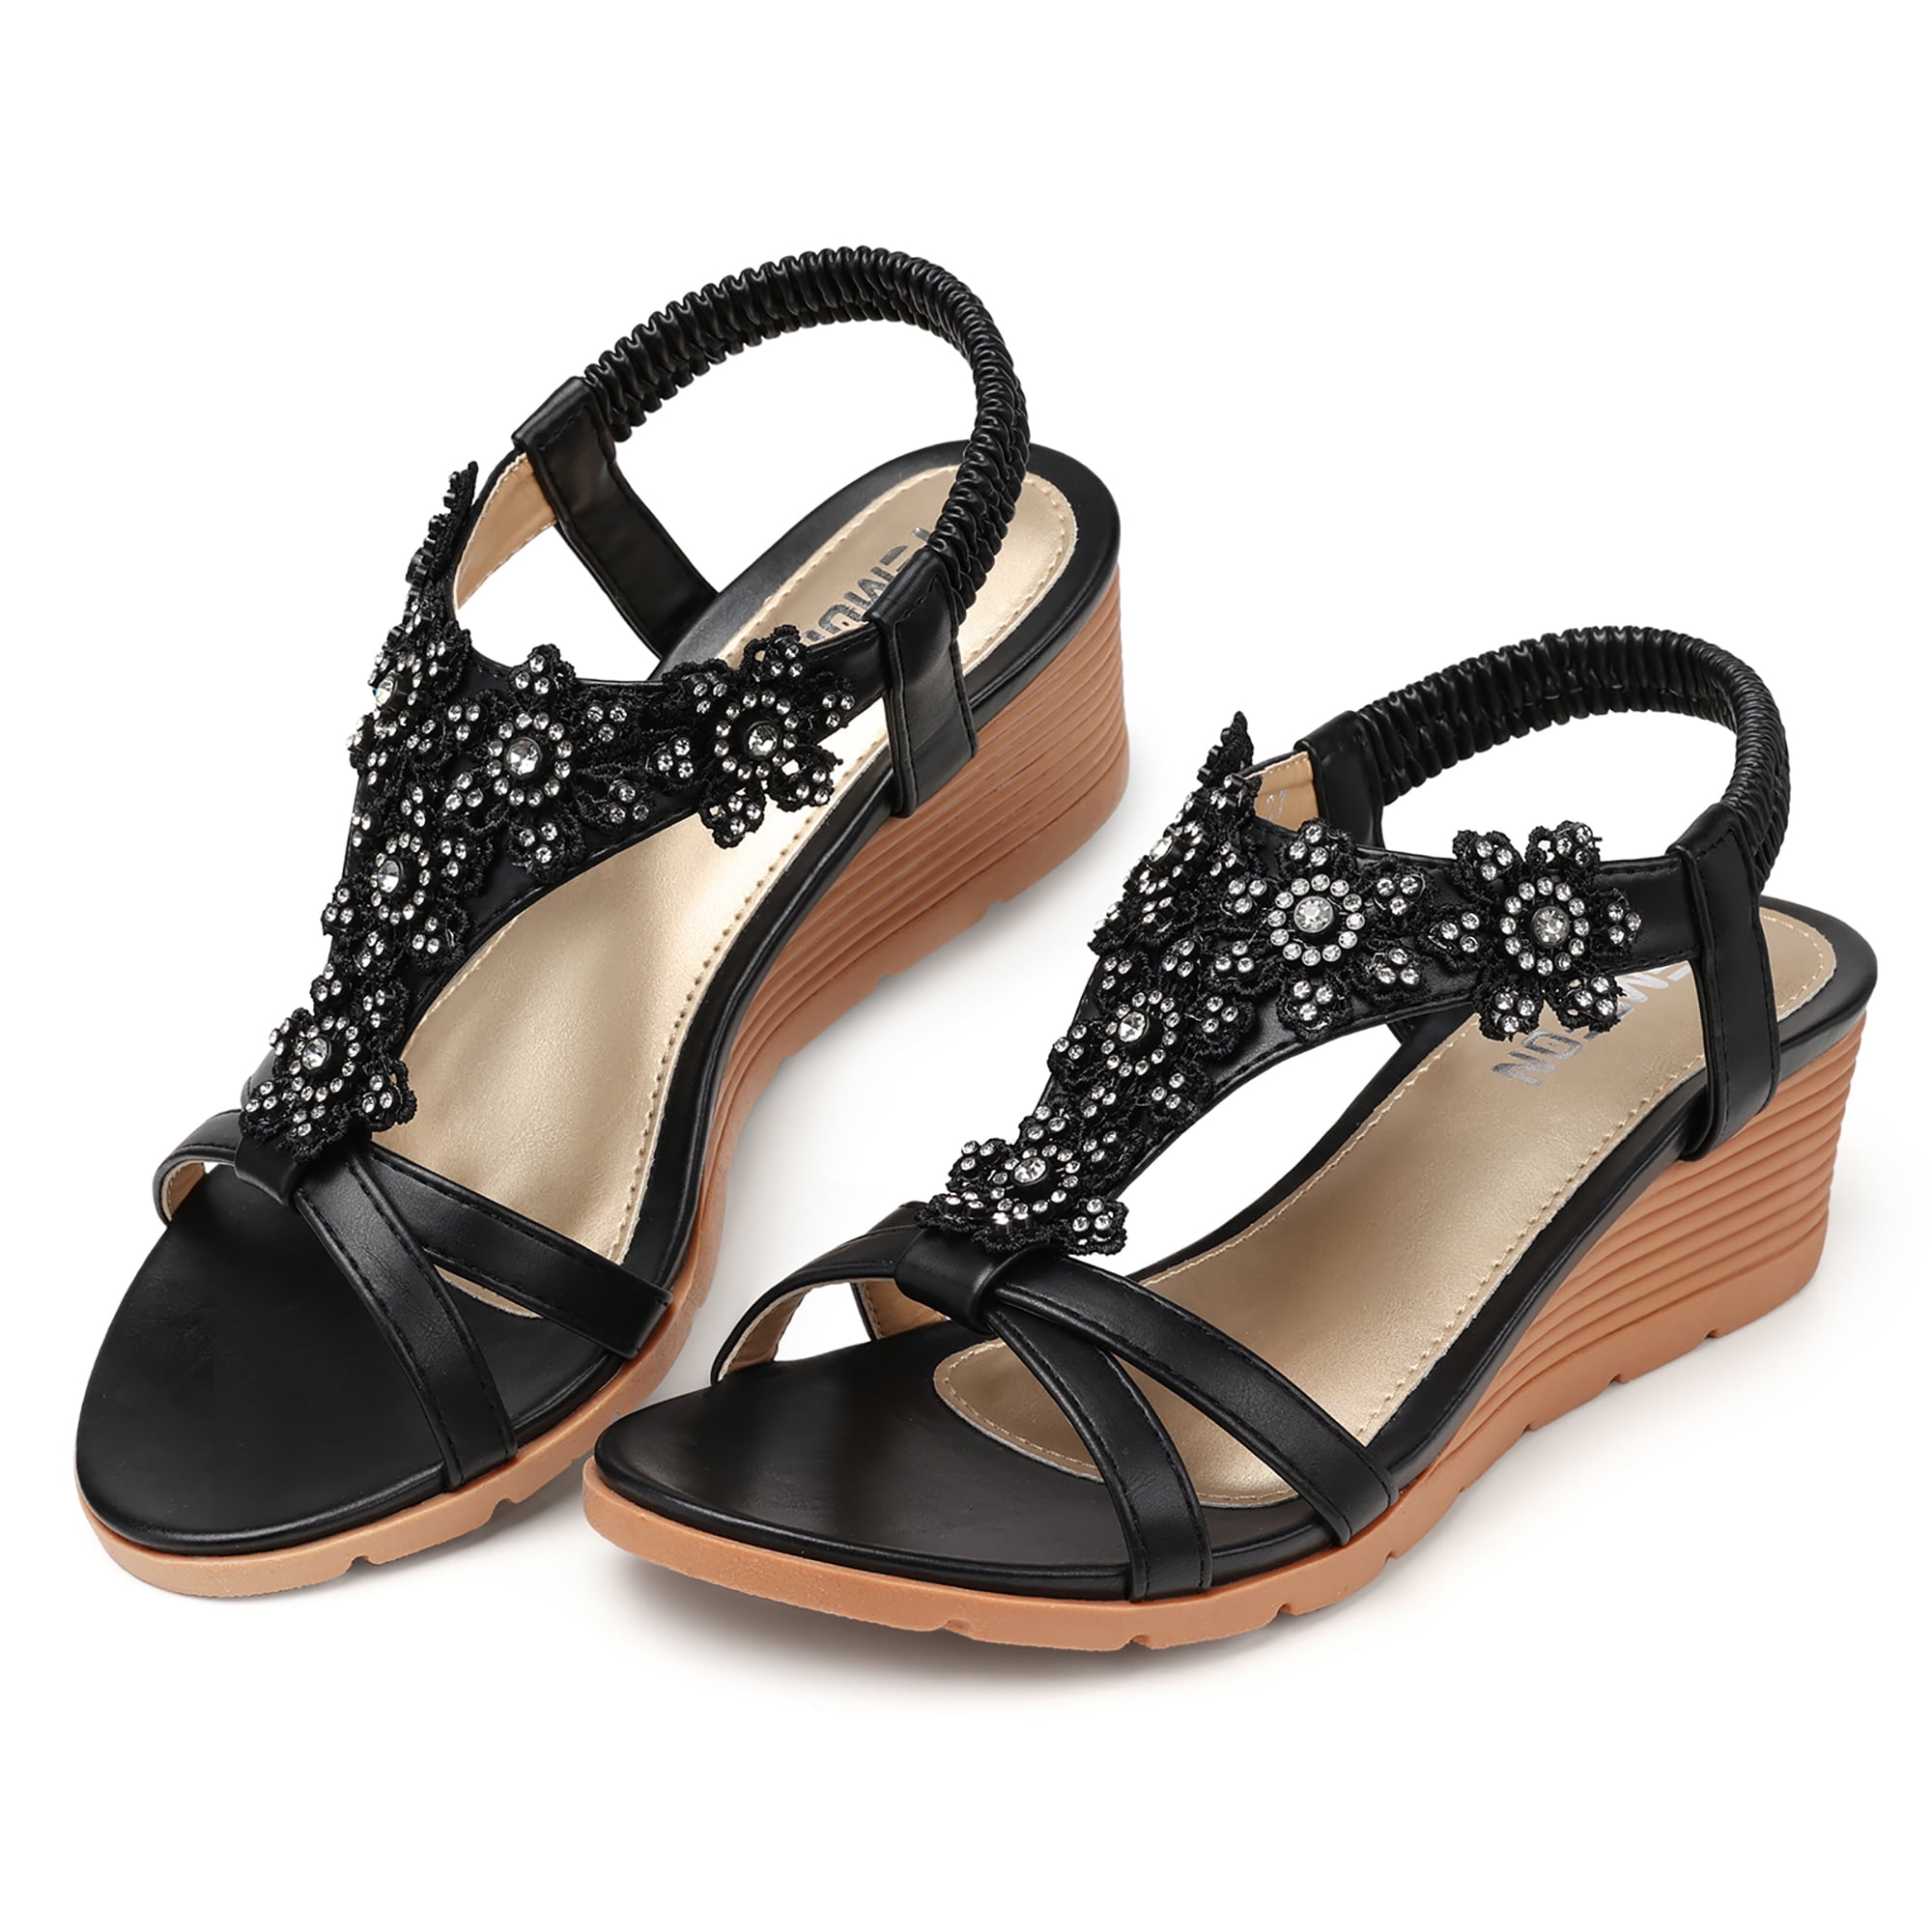 SHIBEVER Wedge Sandal for Women Summer Casual Boho Sandals Flower ...